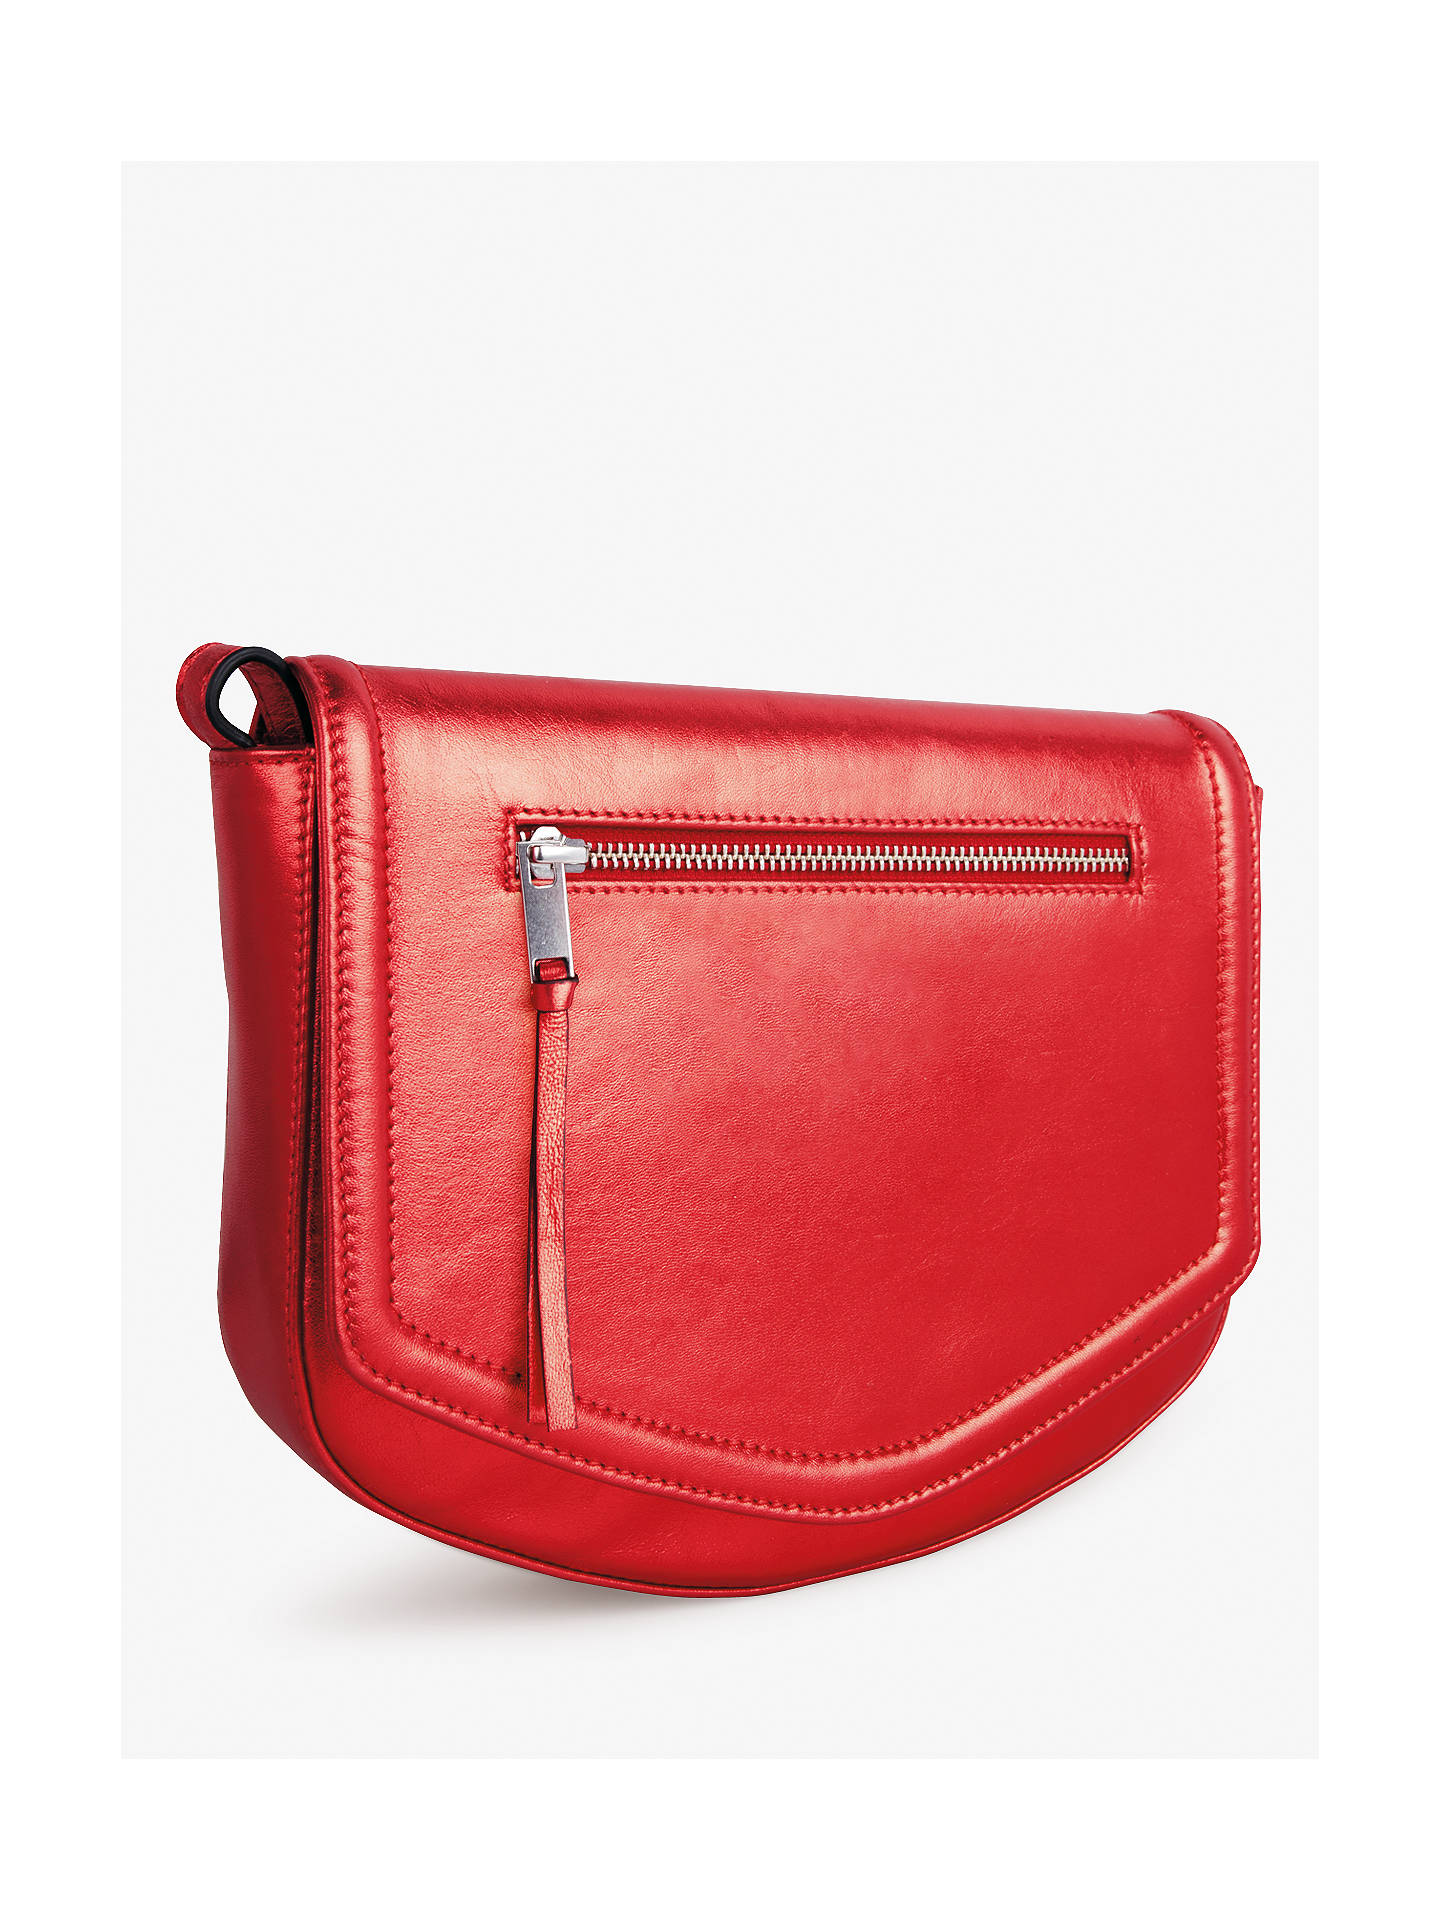 Offer: hush Aurelie Bag, Red at John Lewis & Partners